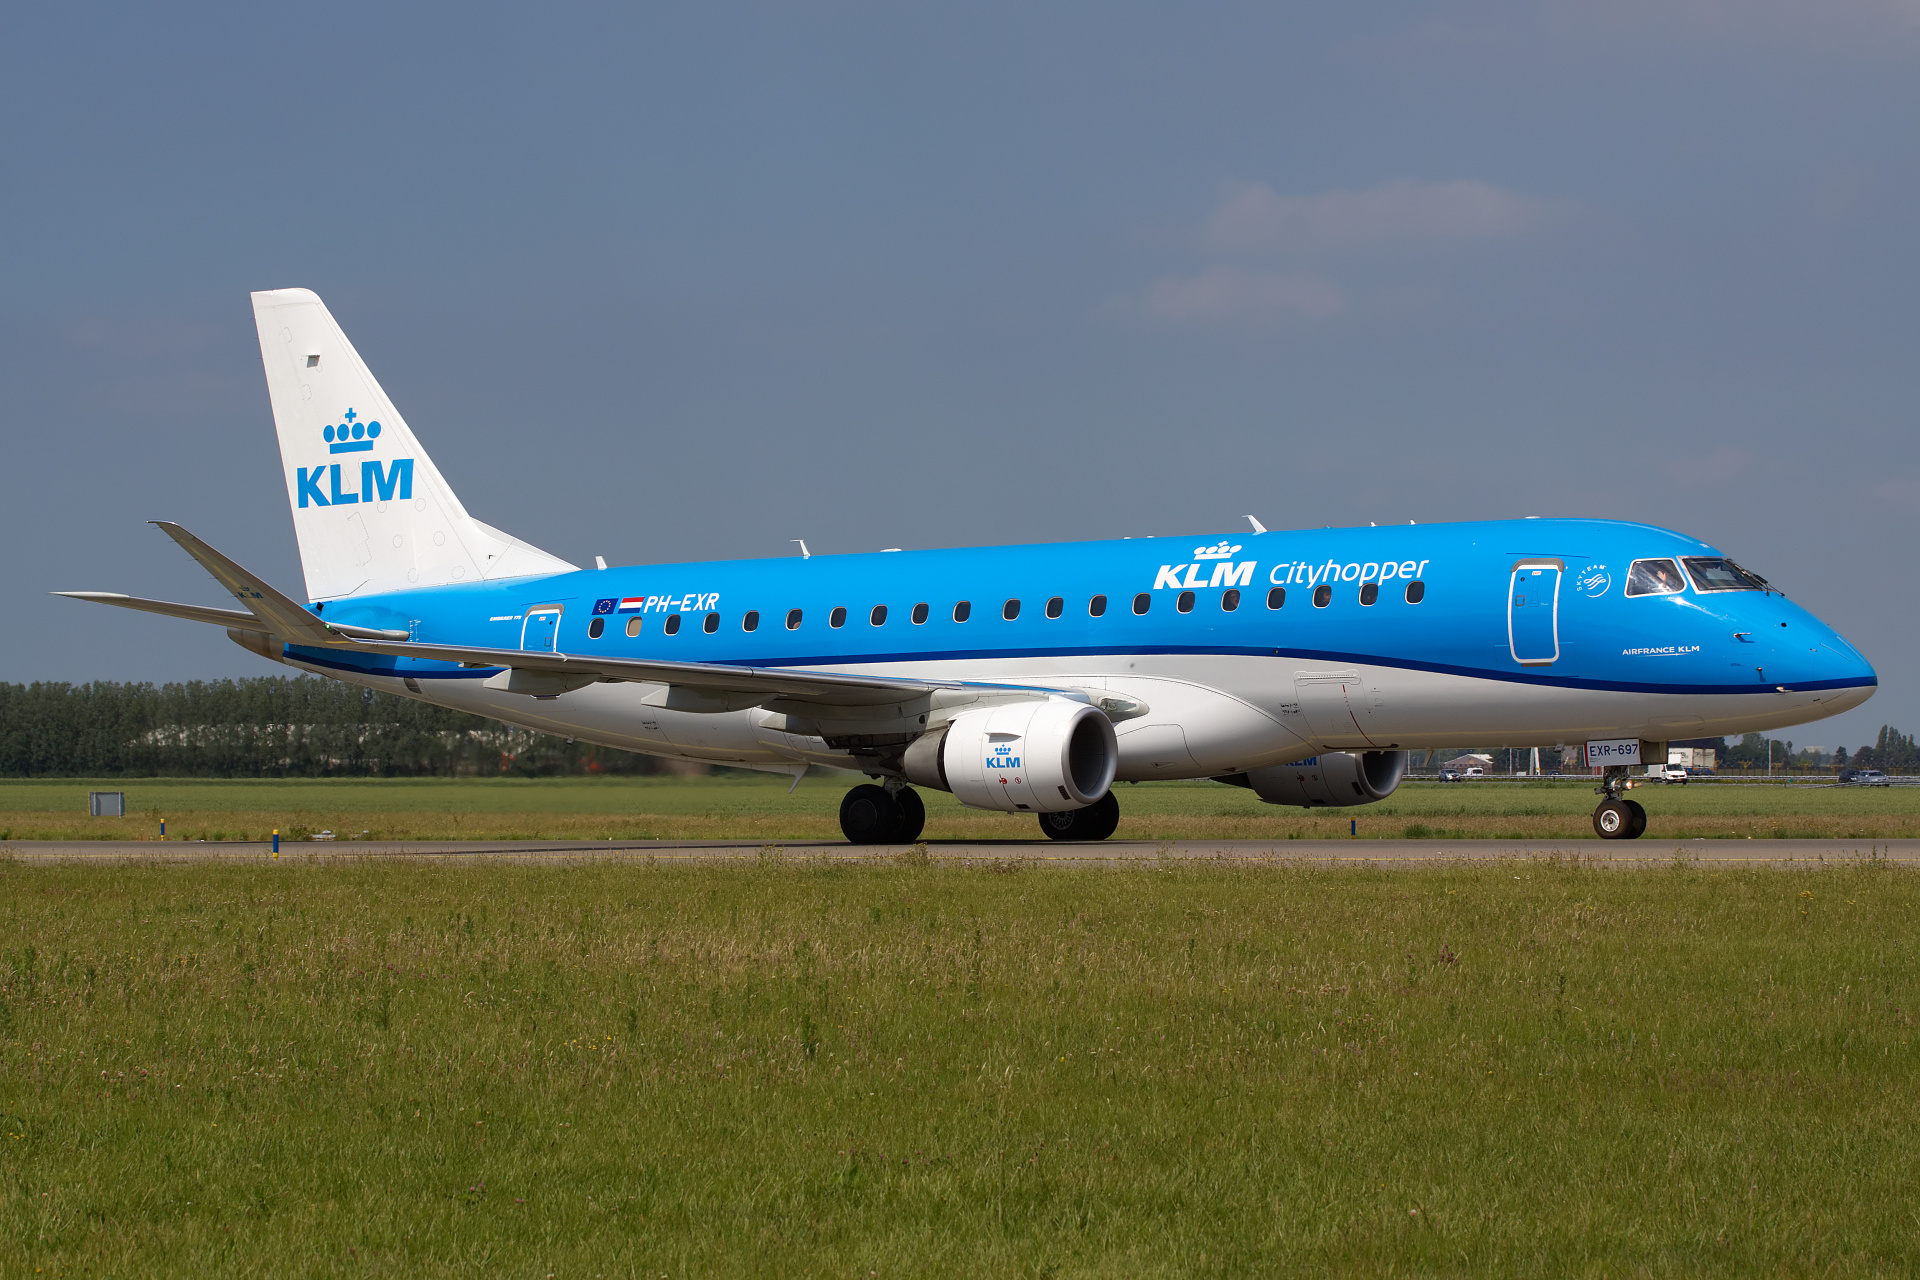 PH-EXR (Aircraft » Schiphol Spotting » Embraer E175 » KLM Cityhopper)